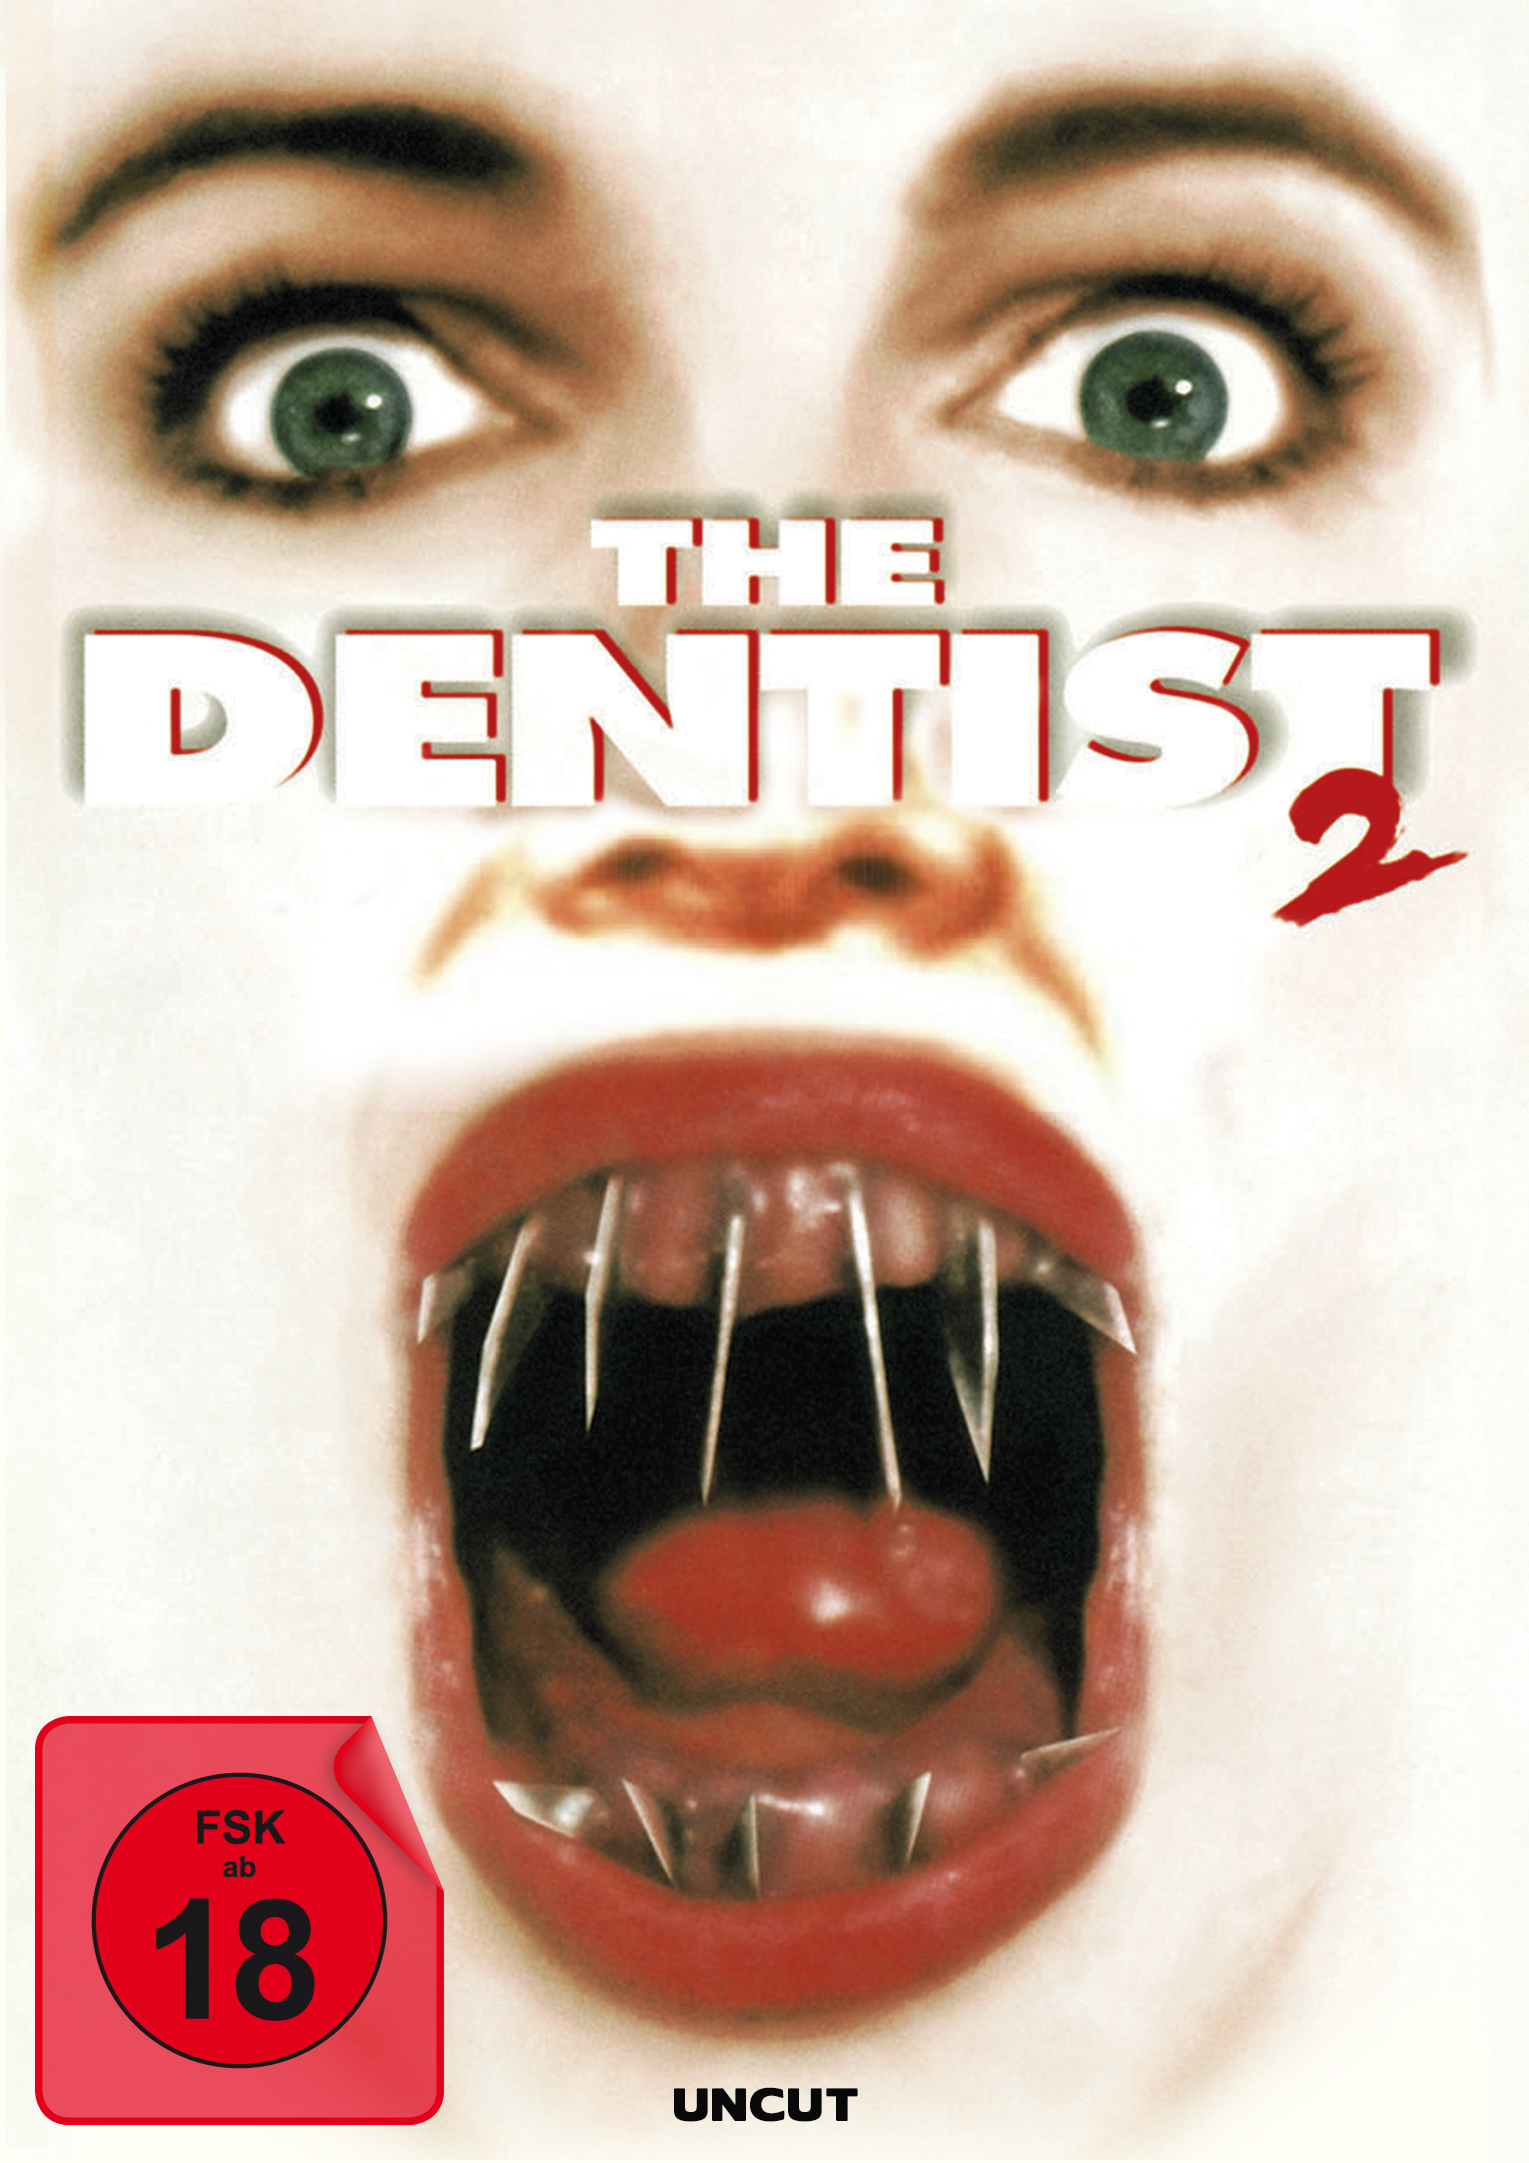 The Dentist 2 (uncut)